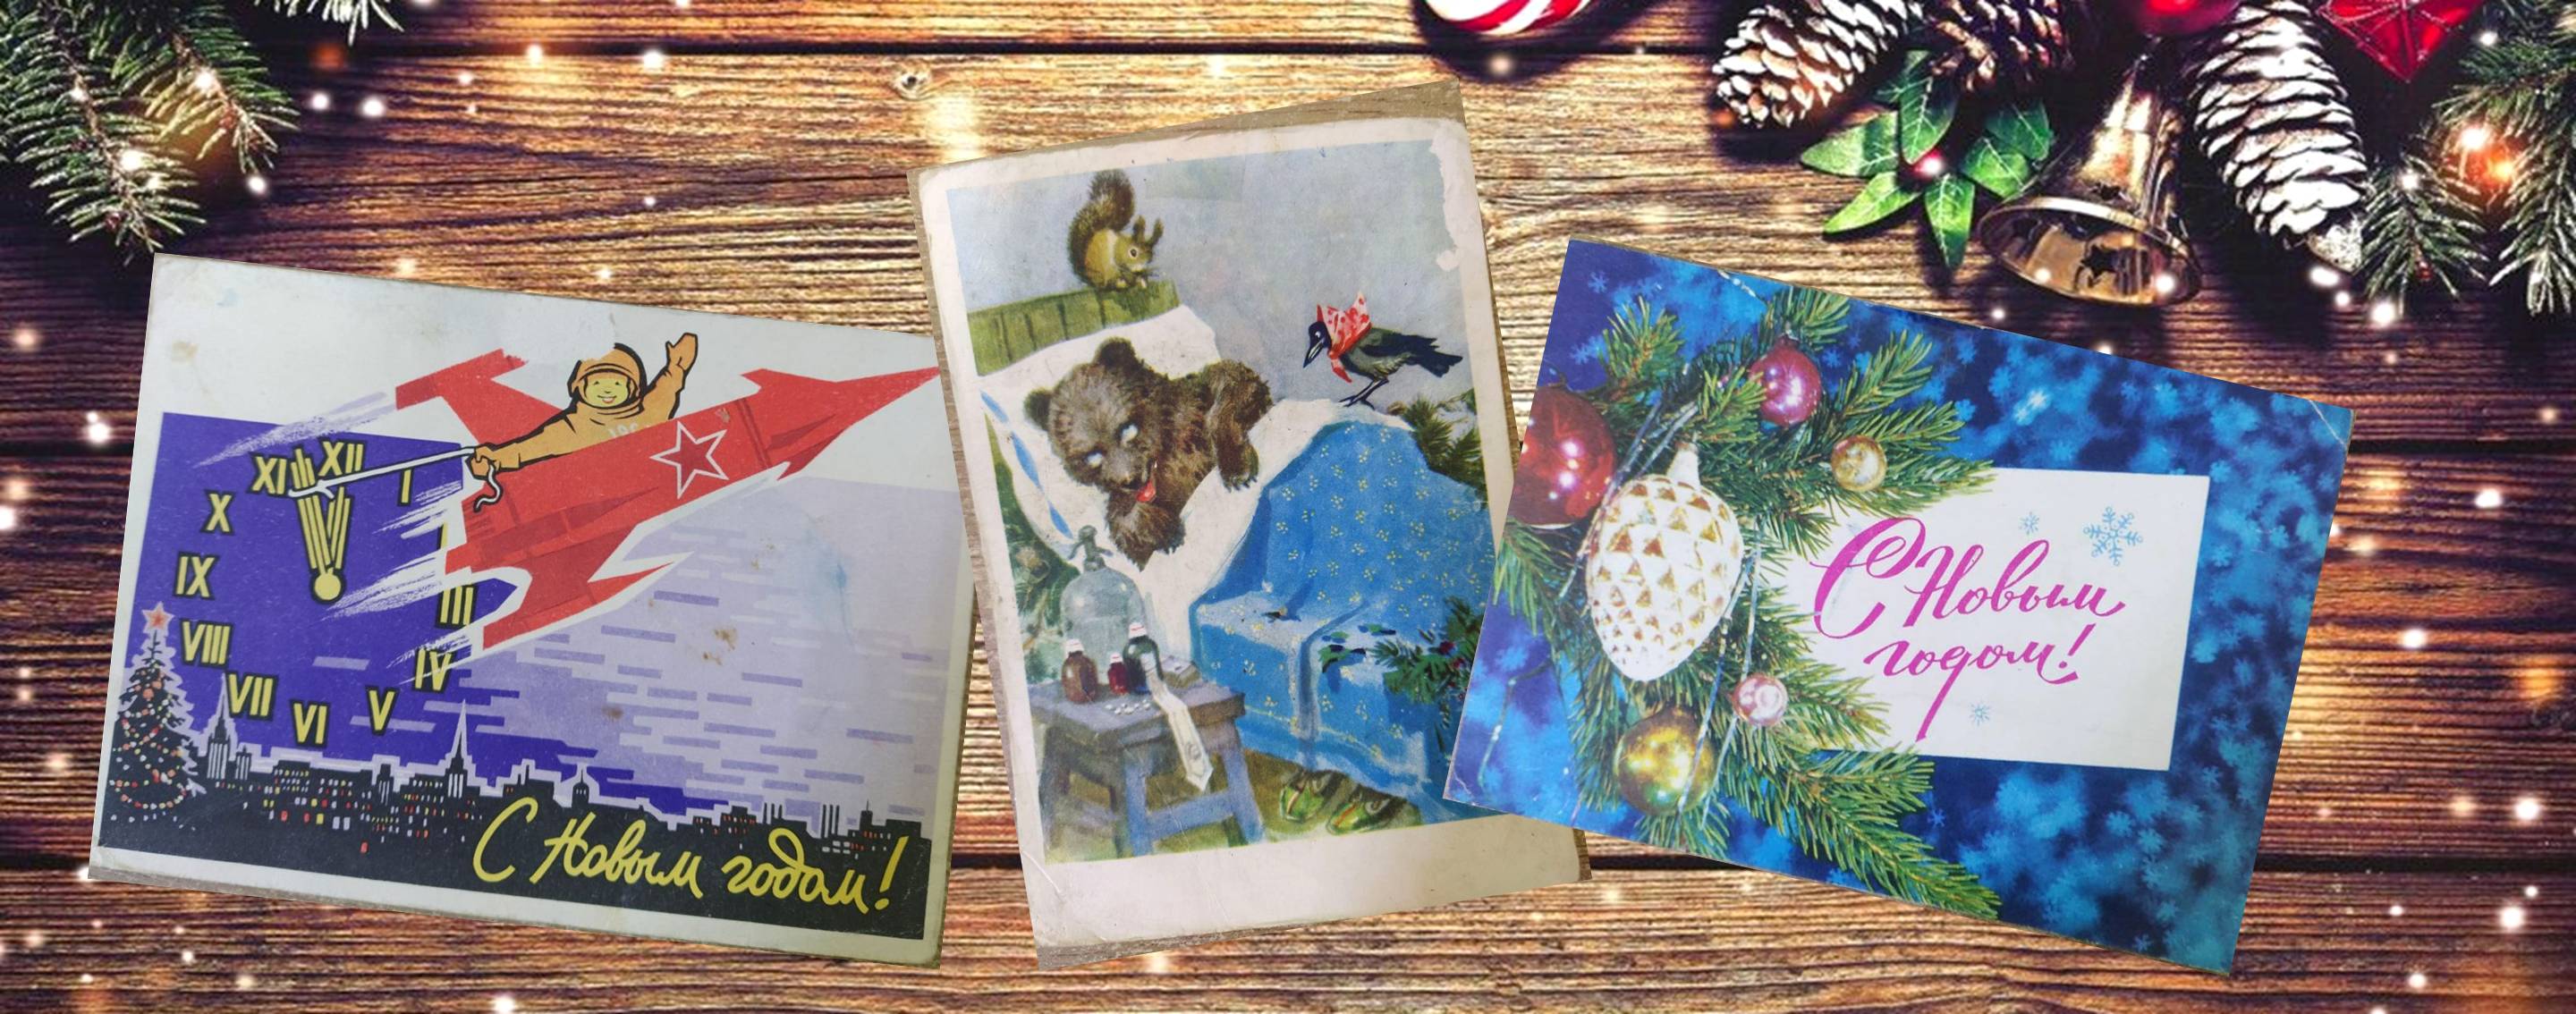 Старые поздравительные открытки в Библиотеке семейного чтения | Сеть  публичных библиотек Вилейского района